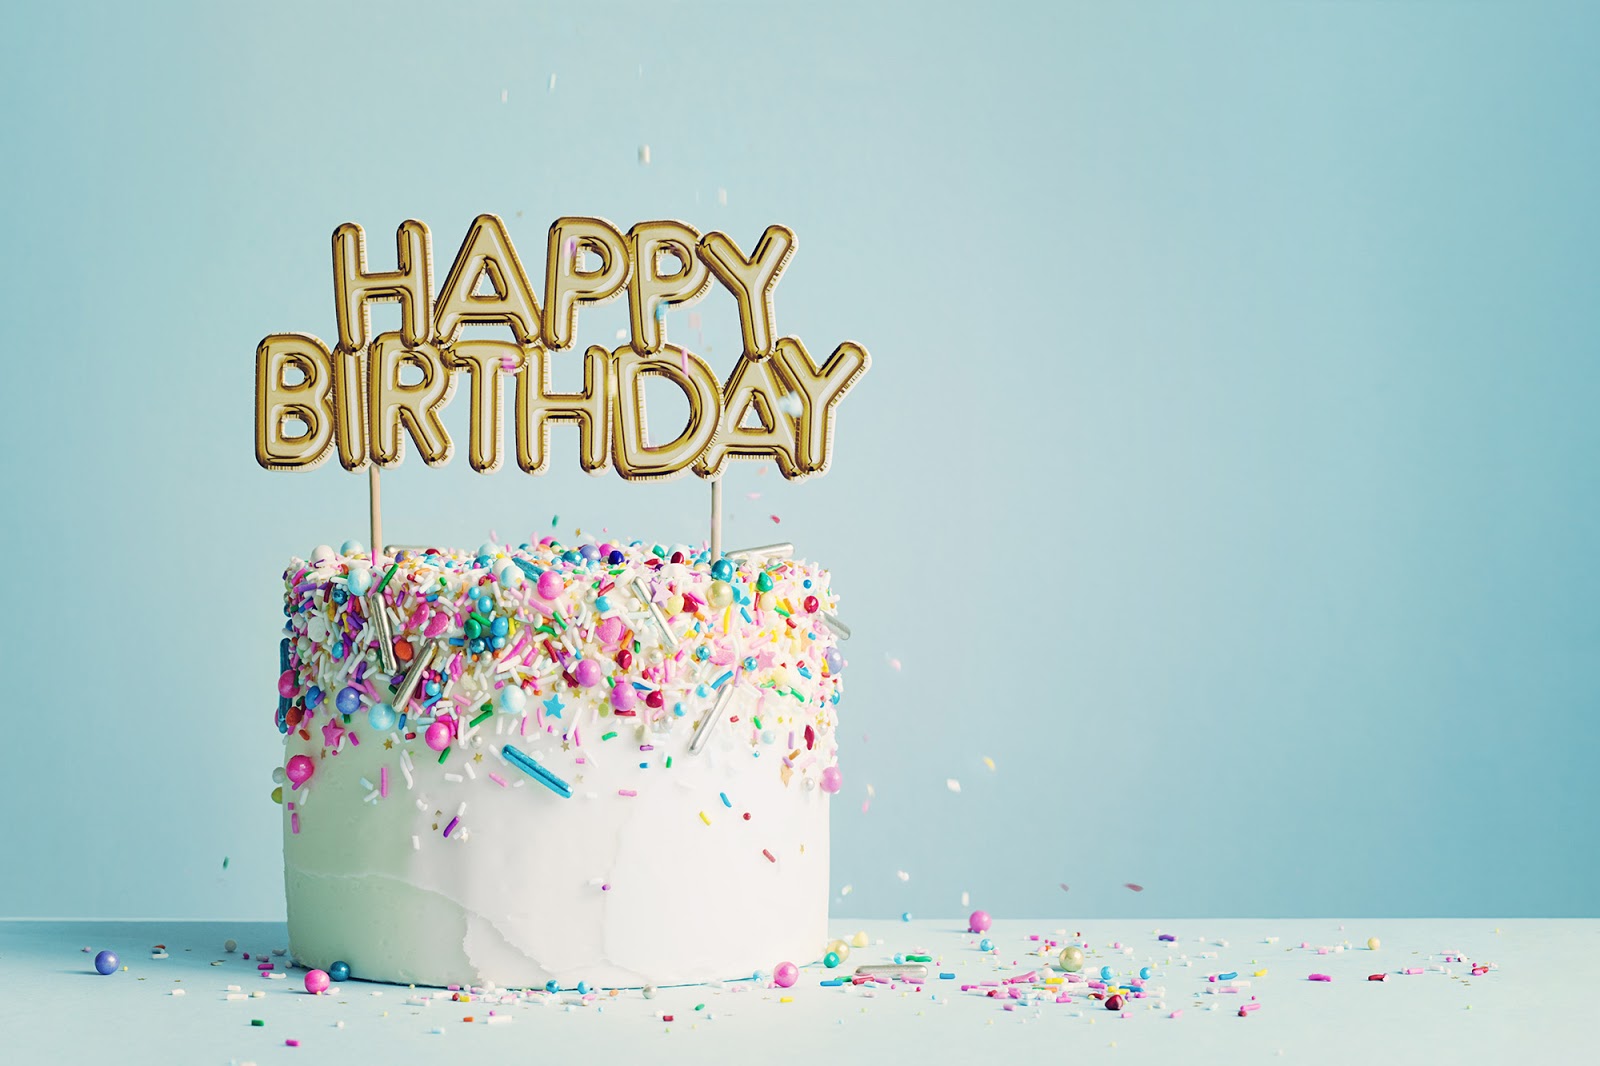 Happy birthday ecard: Happy birthday cake